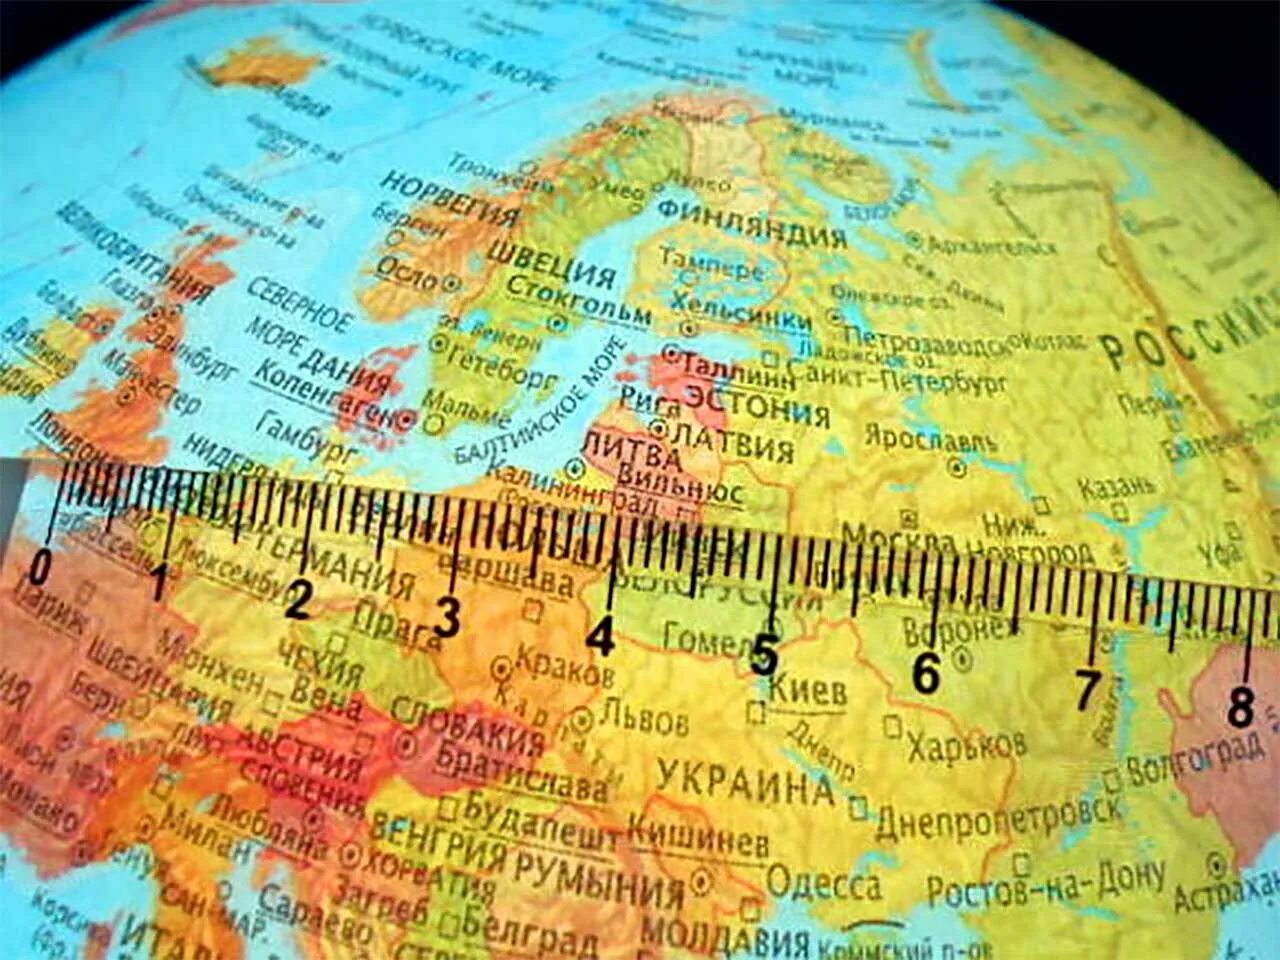 Глобус карта. Измерение расстояний на глобусе. Определение расстояний по глобусу. Измерение расстояния по глобусу.